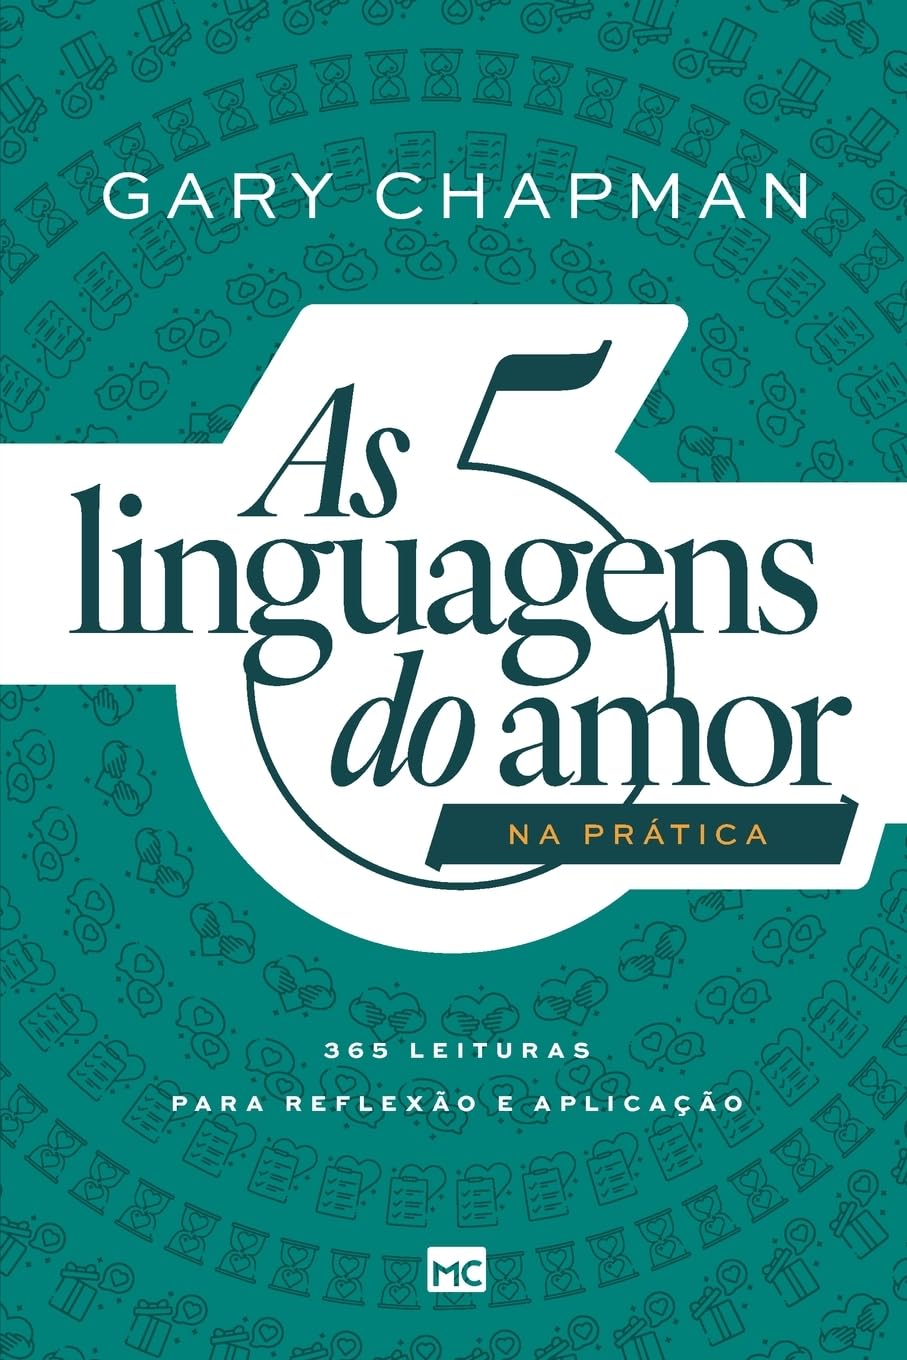 As 5 linguagens do amor na prática: 365 leituras para reflexão e aplicação (Portuguese Edition)